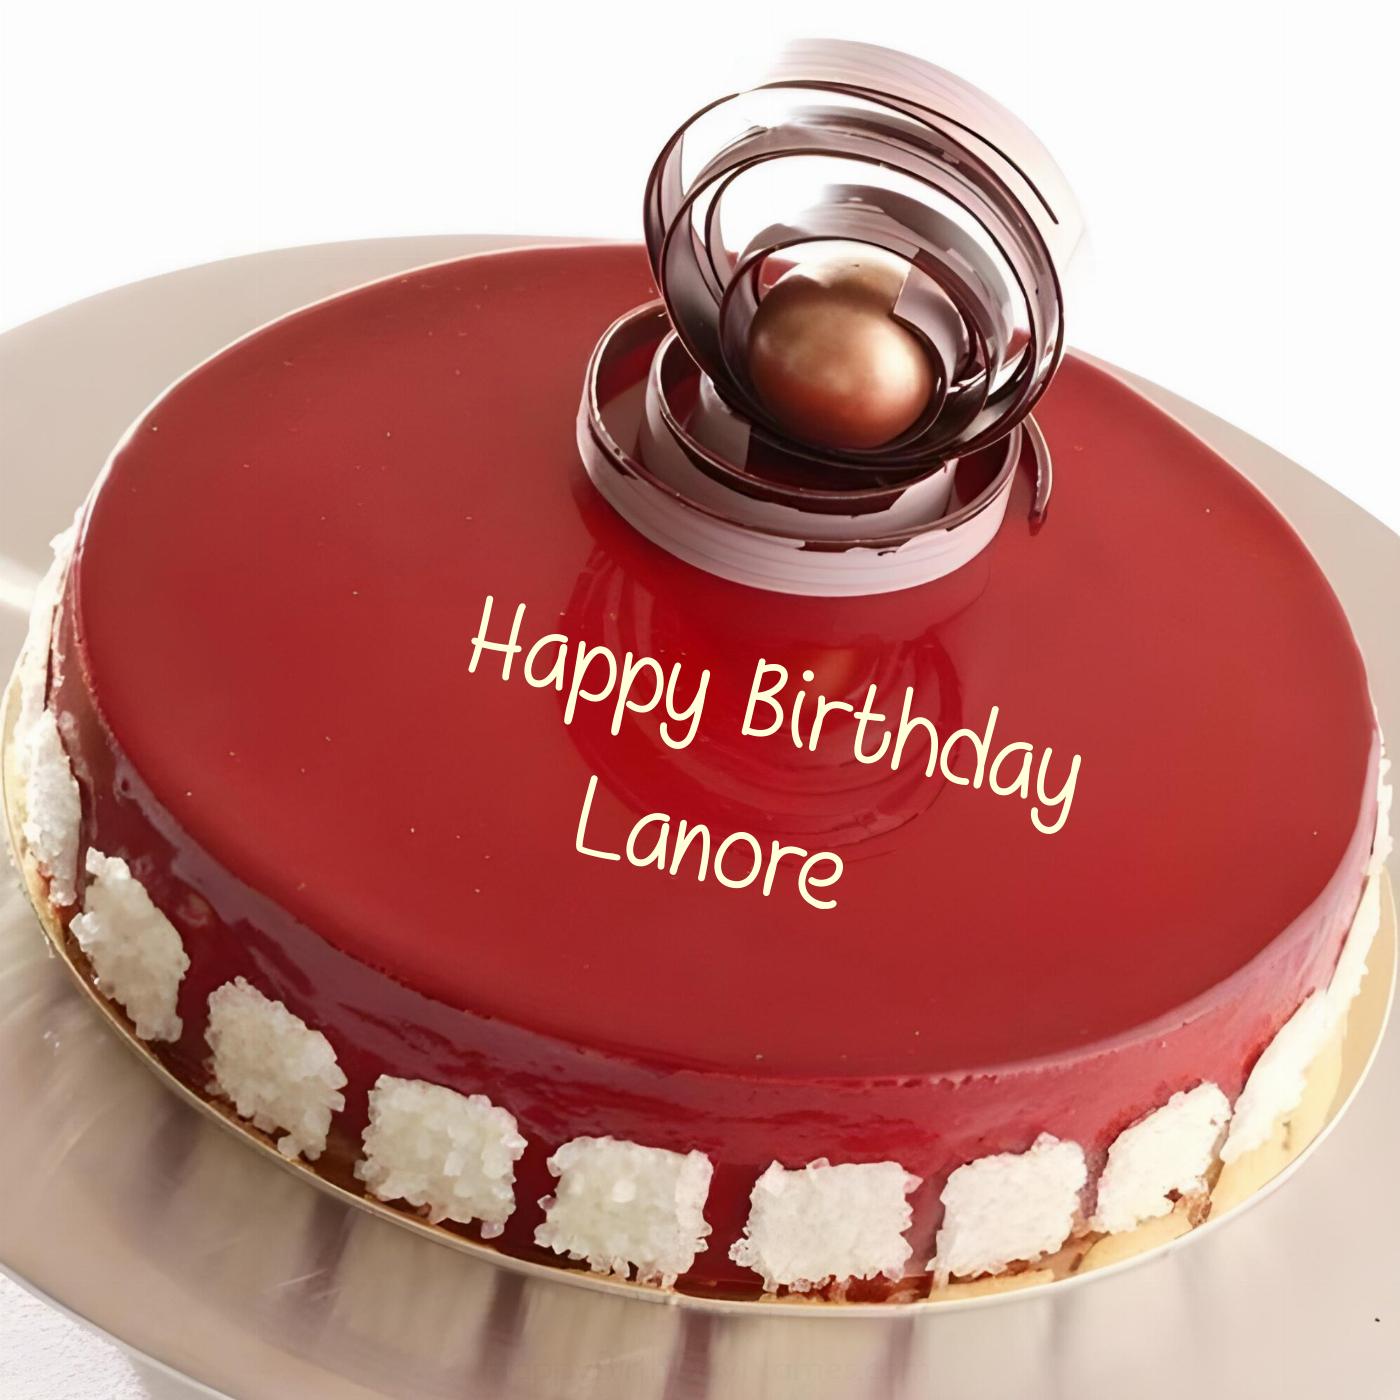 Happy Birthday Lanore Beautiful Red Cake